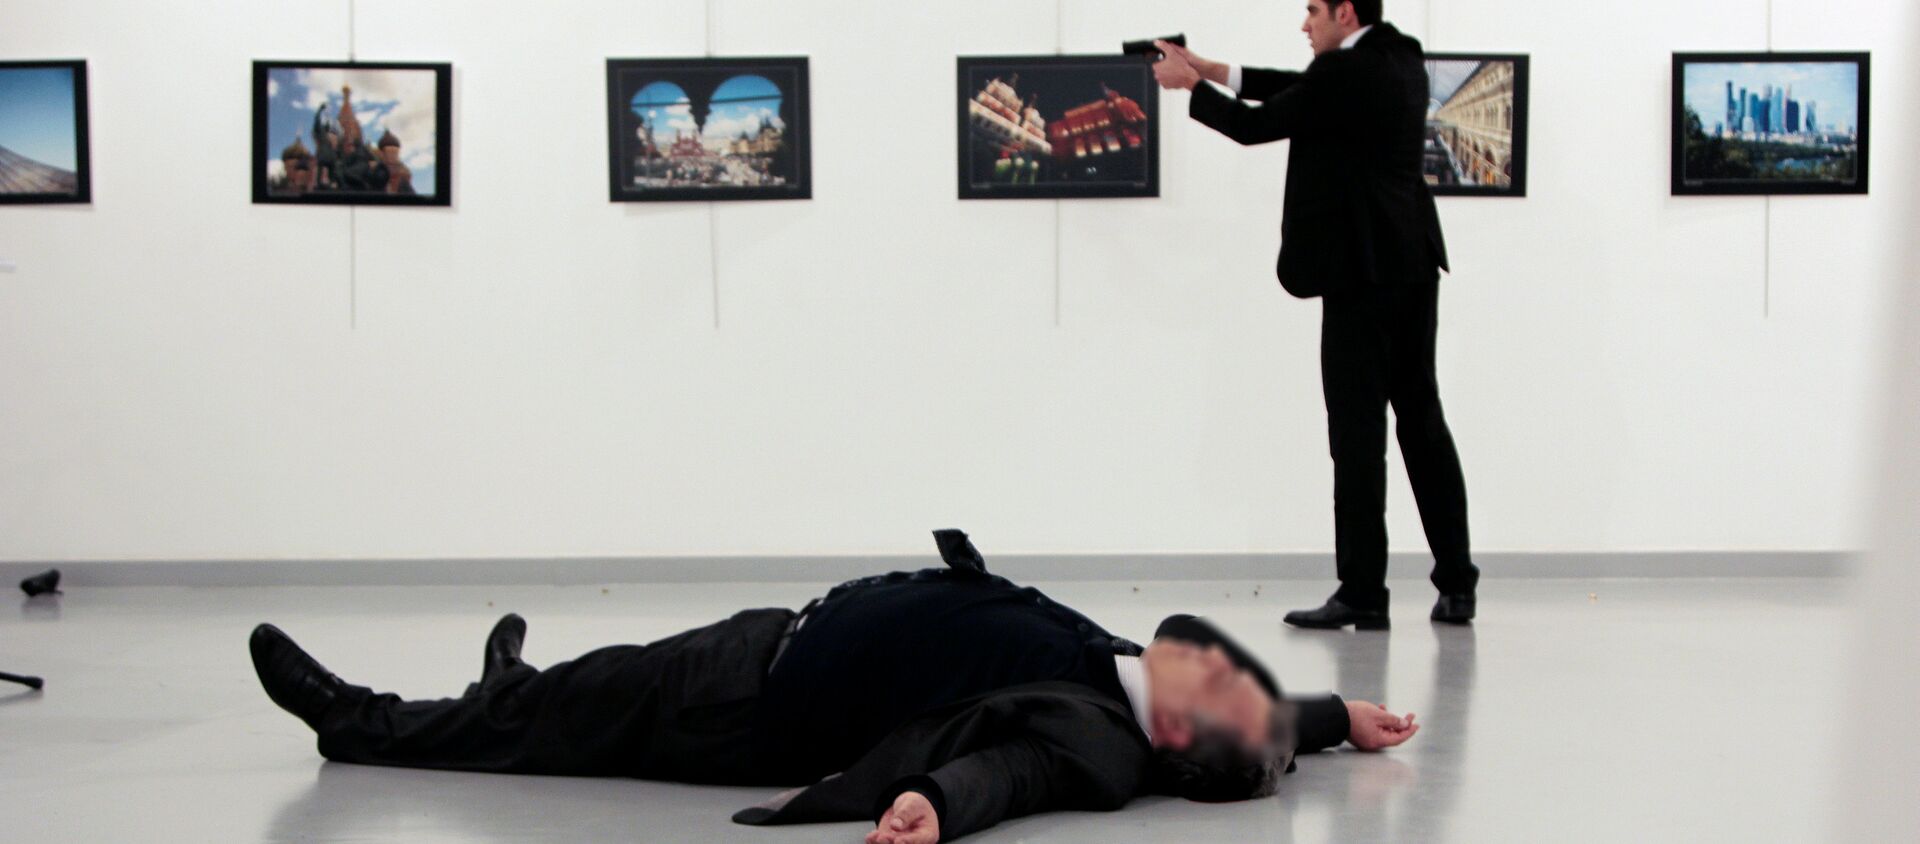 Вооруженный мужчина, застреливший посла РФ в Турции Андрея Карлова - Sputnik Молдова, 1920, 20.12.2017